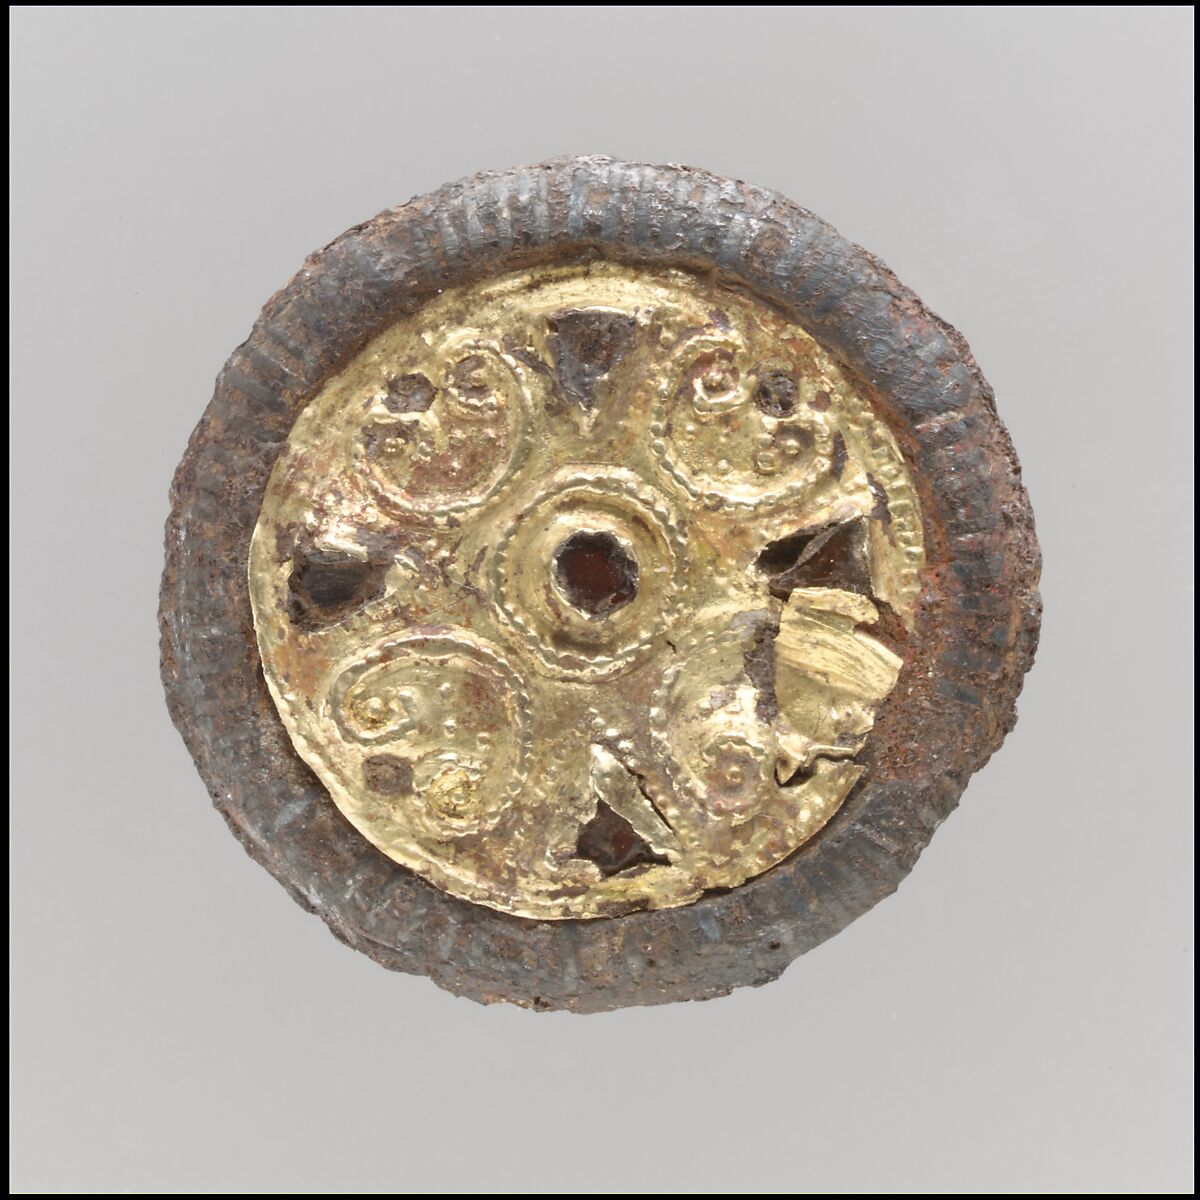 Disk Brooch, Gold, silver, niello, paste, iron core, Frankish 